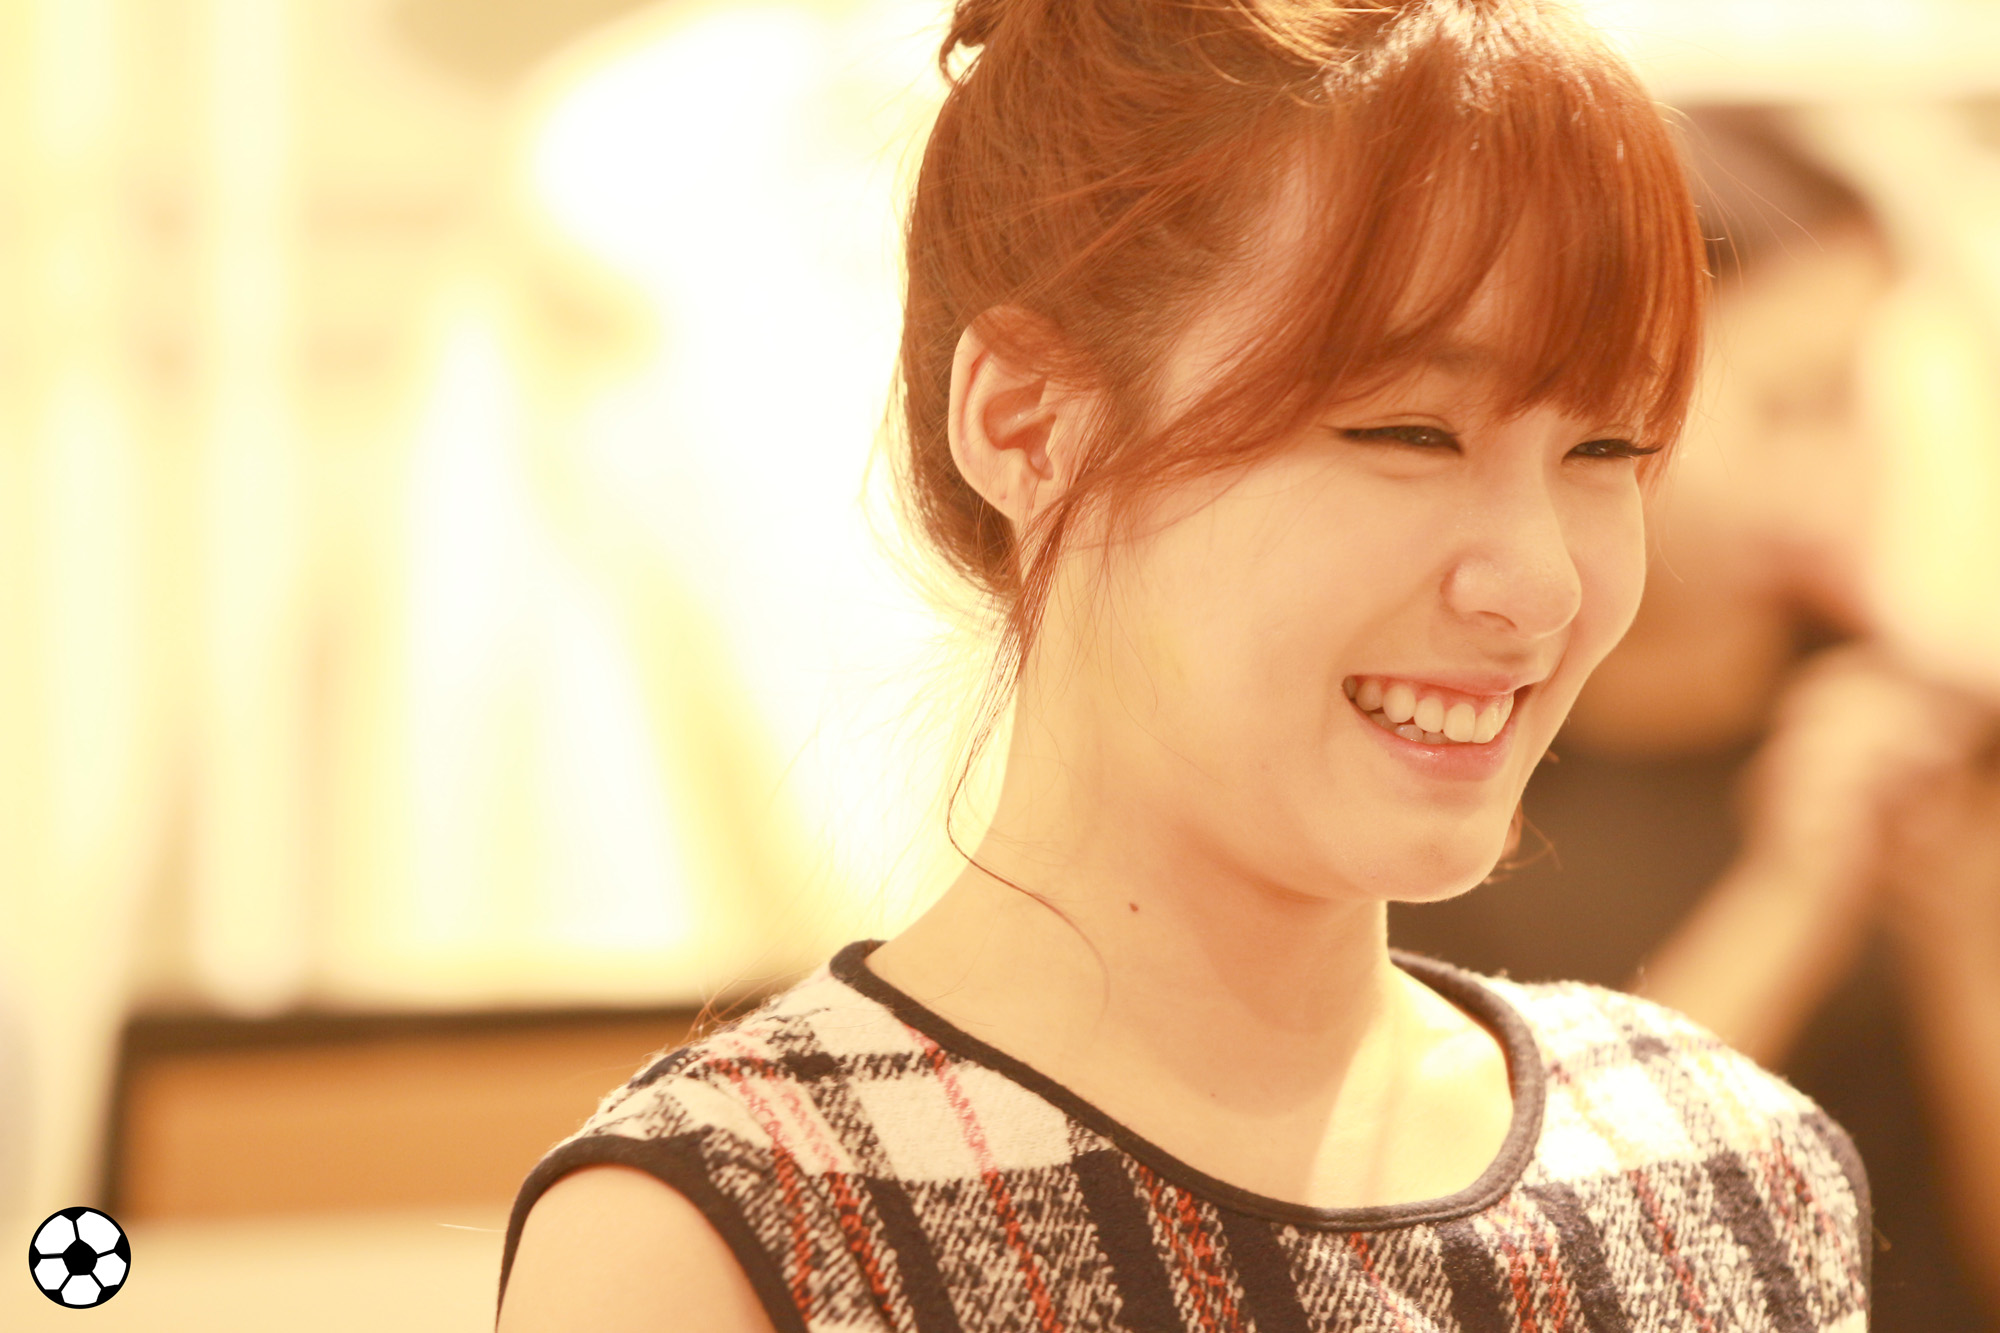 [PIC][28-11-2013]Tiffany ghé thăm cửa hàng "QUA" ở Hyundai Department Store vào trưa nay - Page 3 2652594F5298BA66260CA6